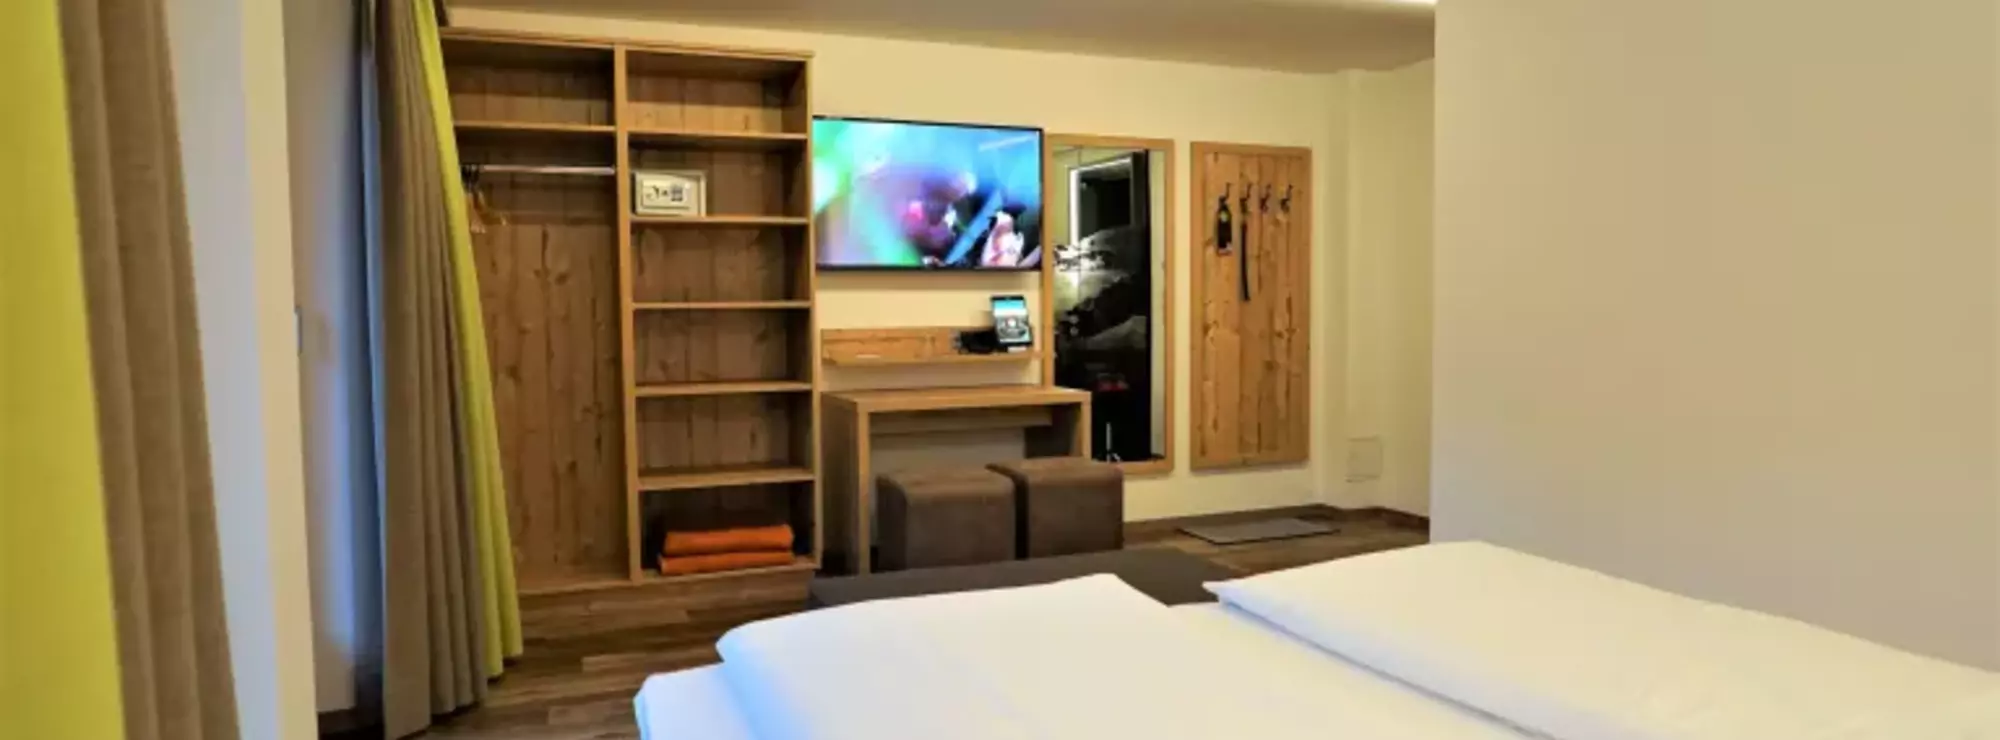 Schlafzimmer mit Kleiderschrank, Garderobe, Wandspiegel und Fernseher